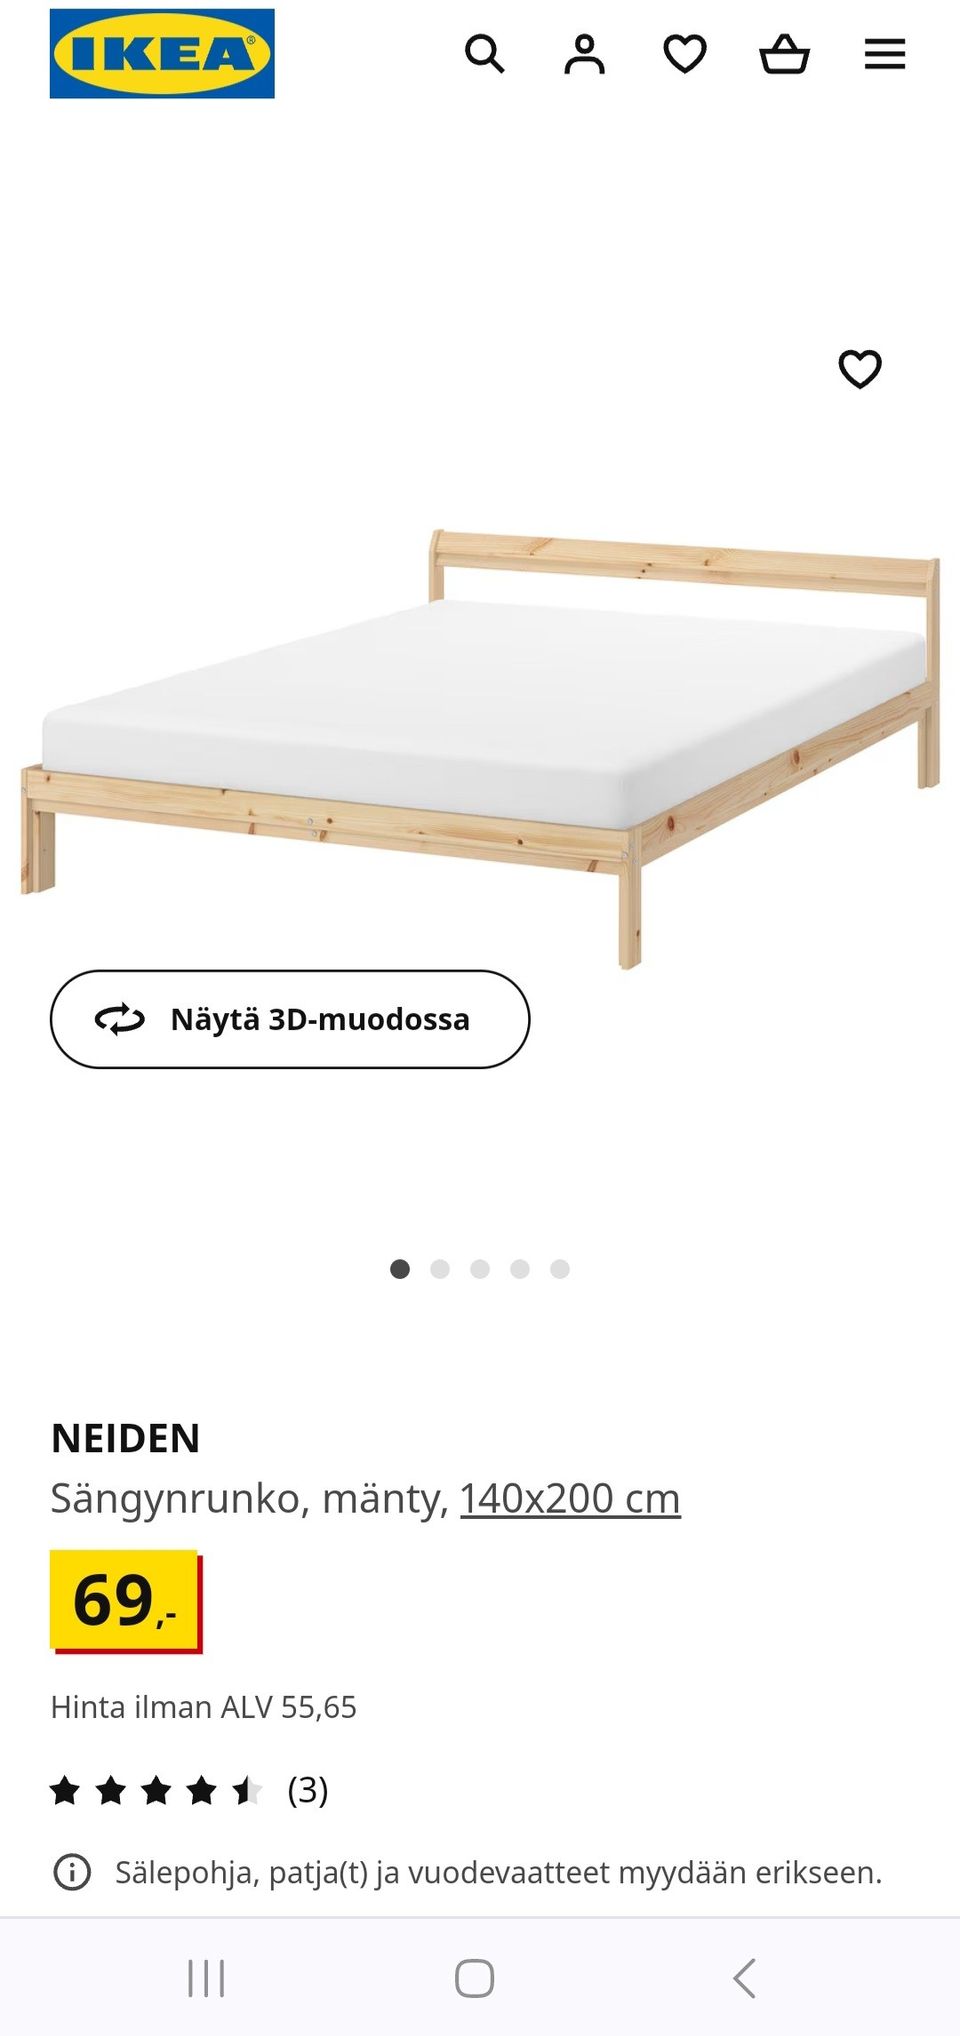 Ikea NEIDEN 140cm